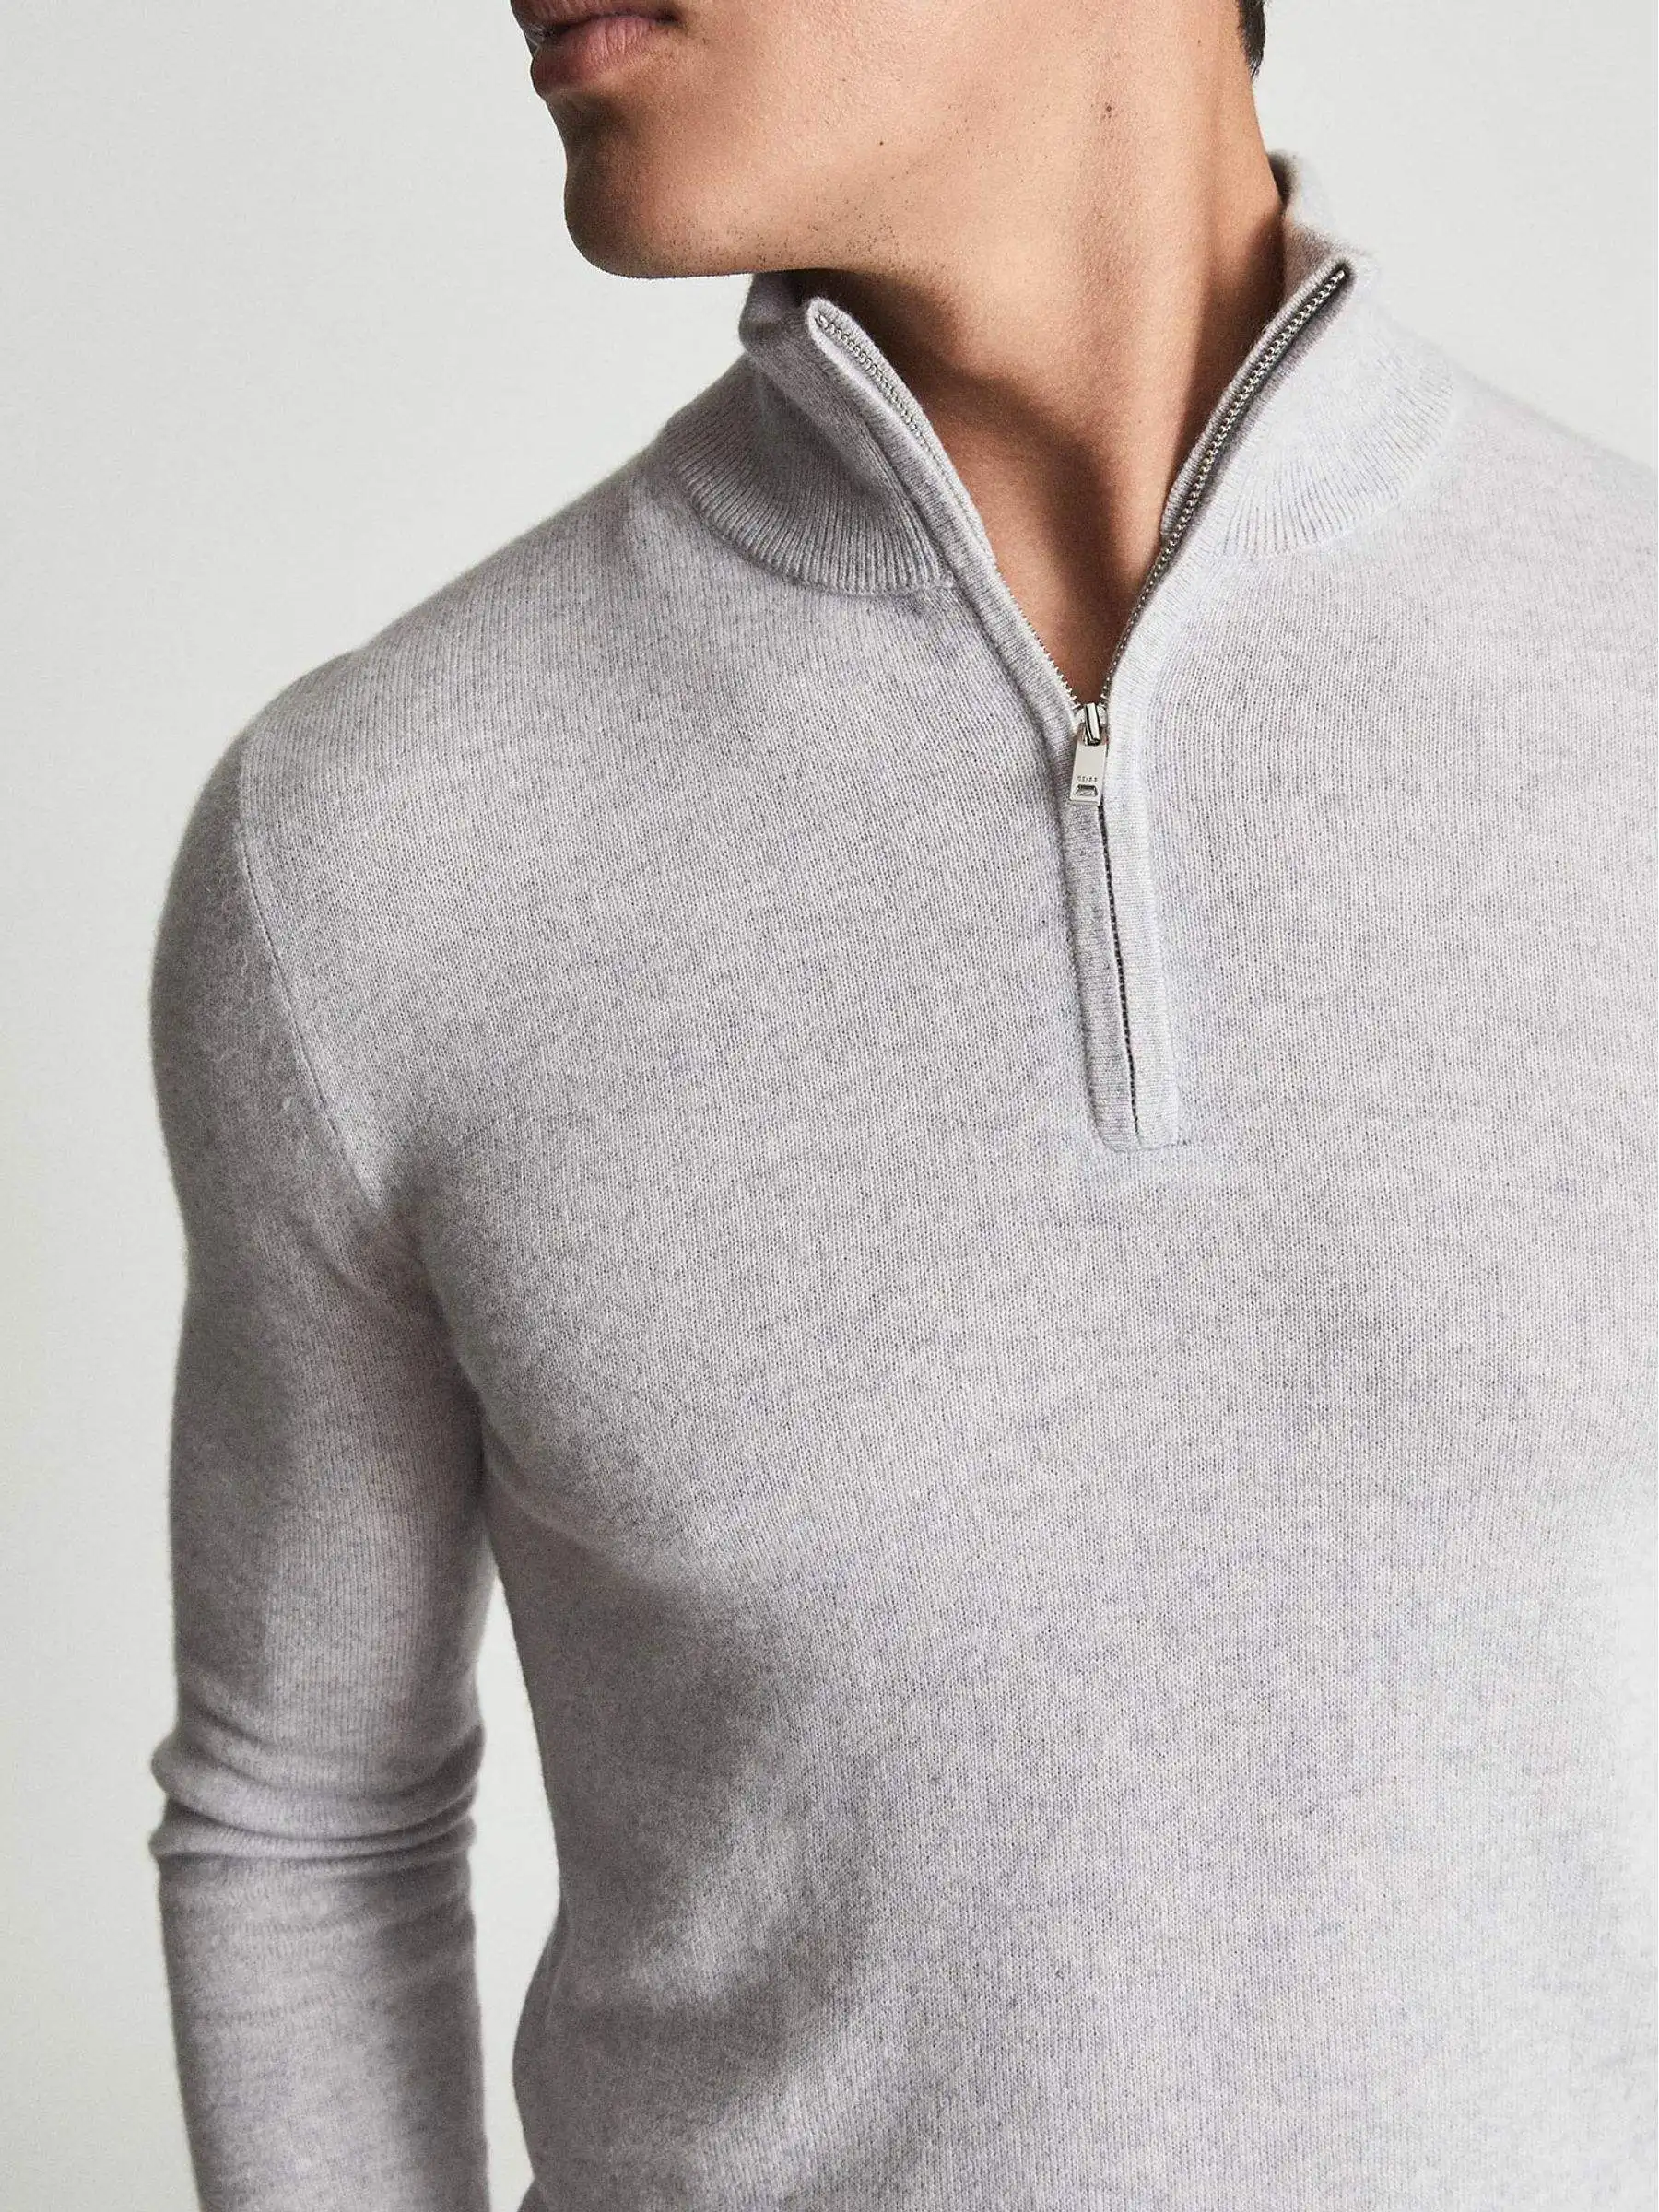 Blusa plus size de malha personalizada mongólia 100% lã de cabra mistura de caxemira blusa 1/4 grosso meia zip para homem homme